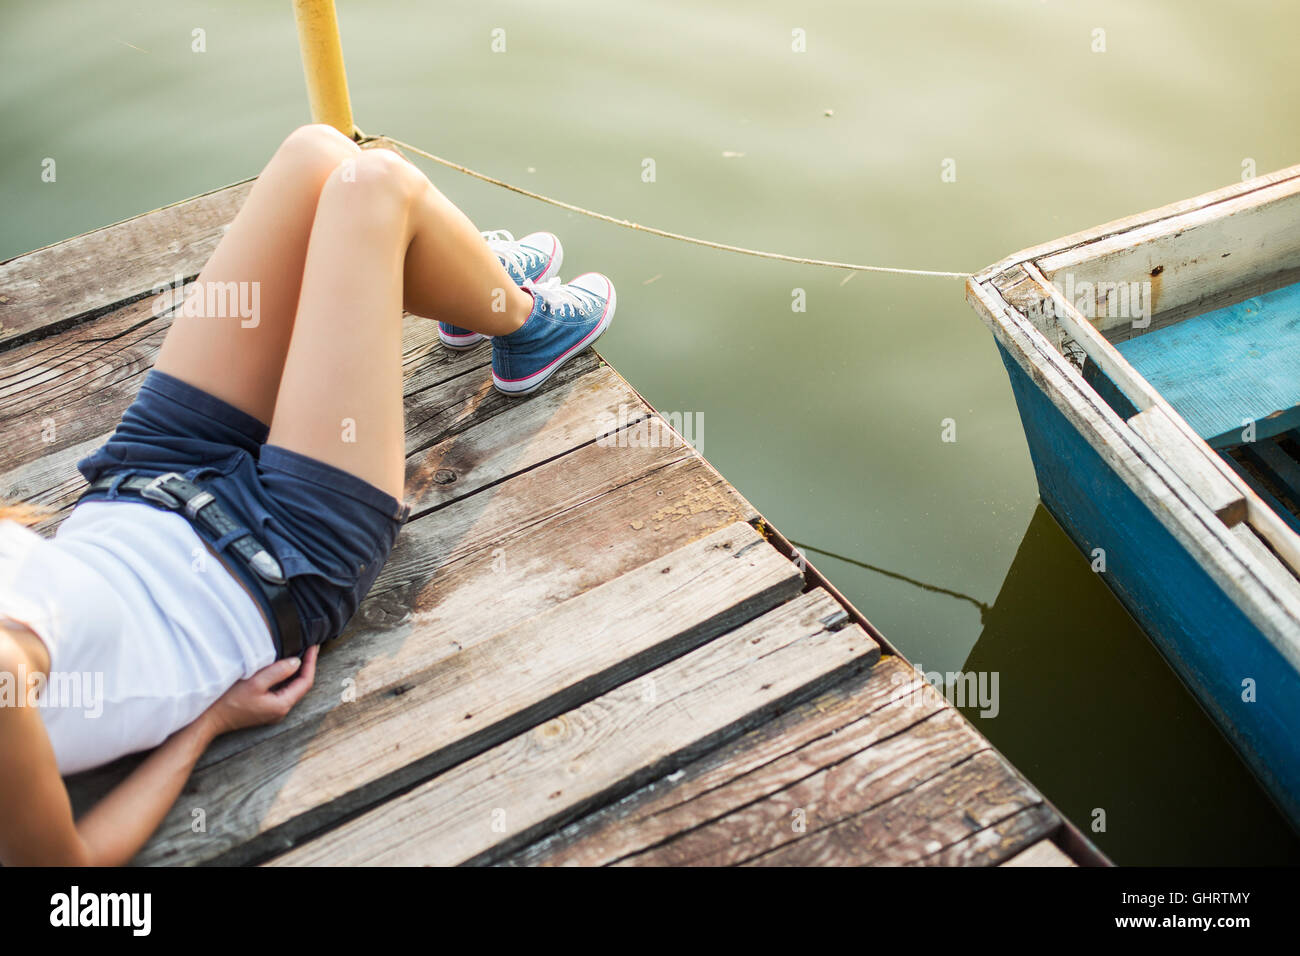 De vie de plein air view of young woman wearing jeans sneakers assis sur une jetée en bois à l'eau Banque D'Images